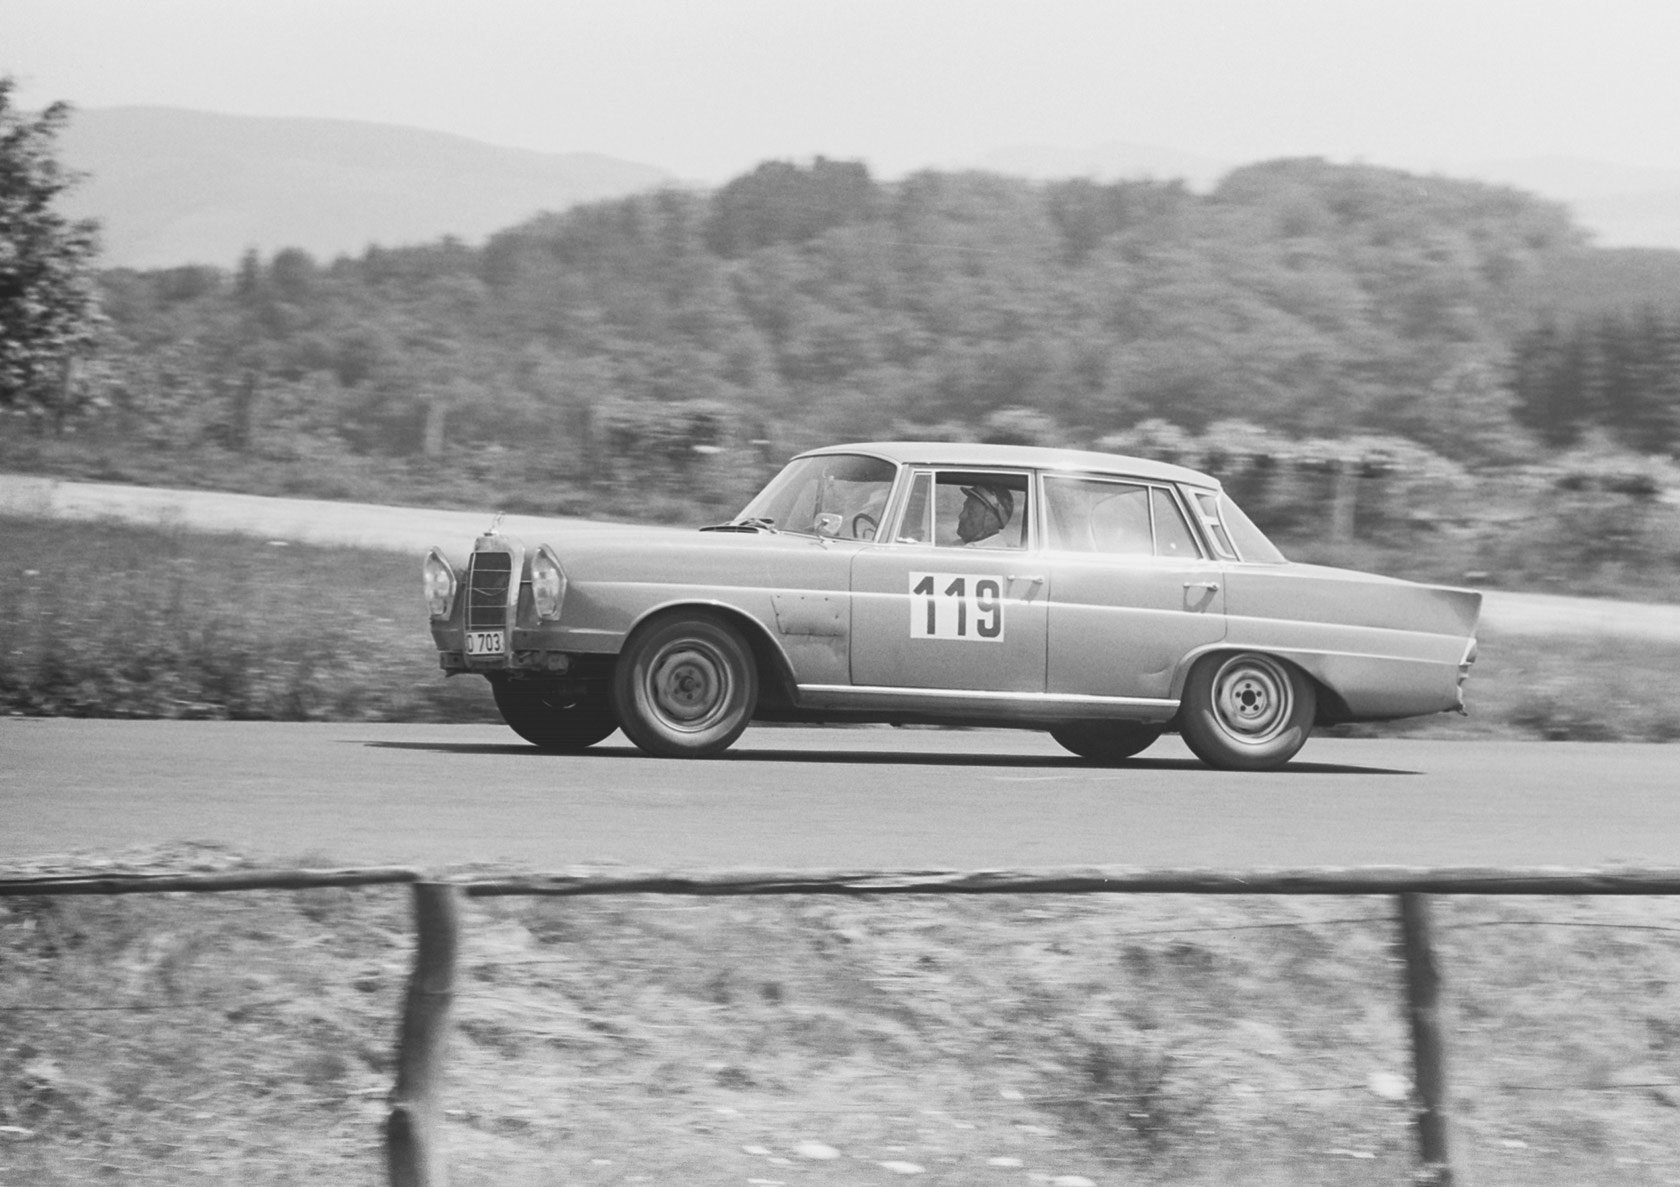 Internationales ADAC 6-Stunden-Tourenwagen-Rennen auf dem Nürburgring 1963 dem ersten Rennen der European Touring Car Challenge Geschichte.